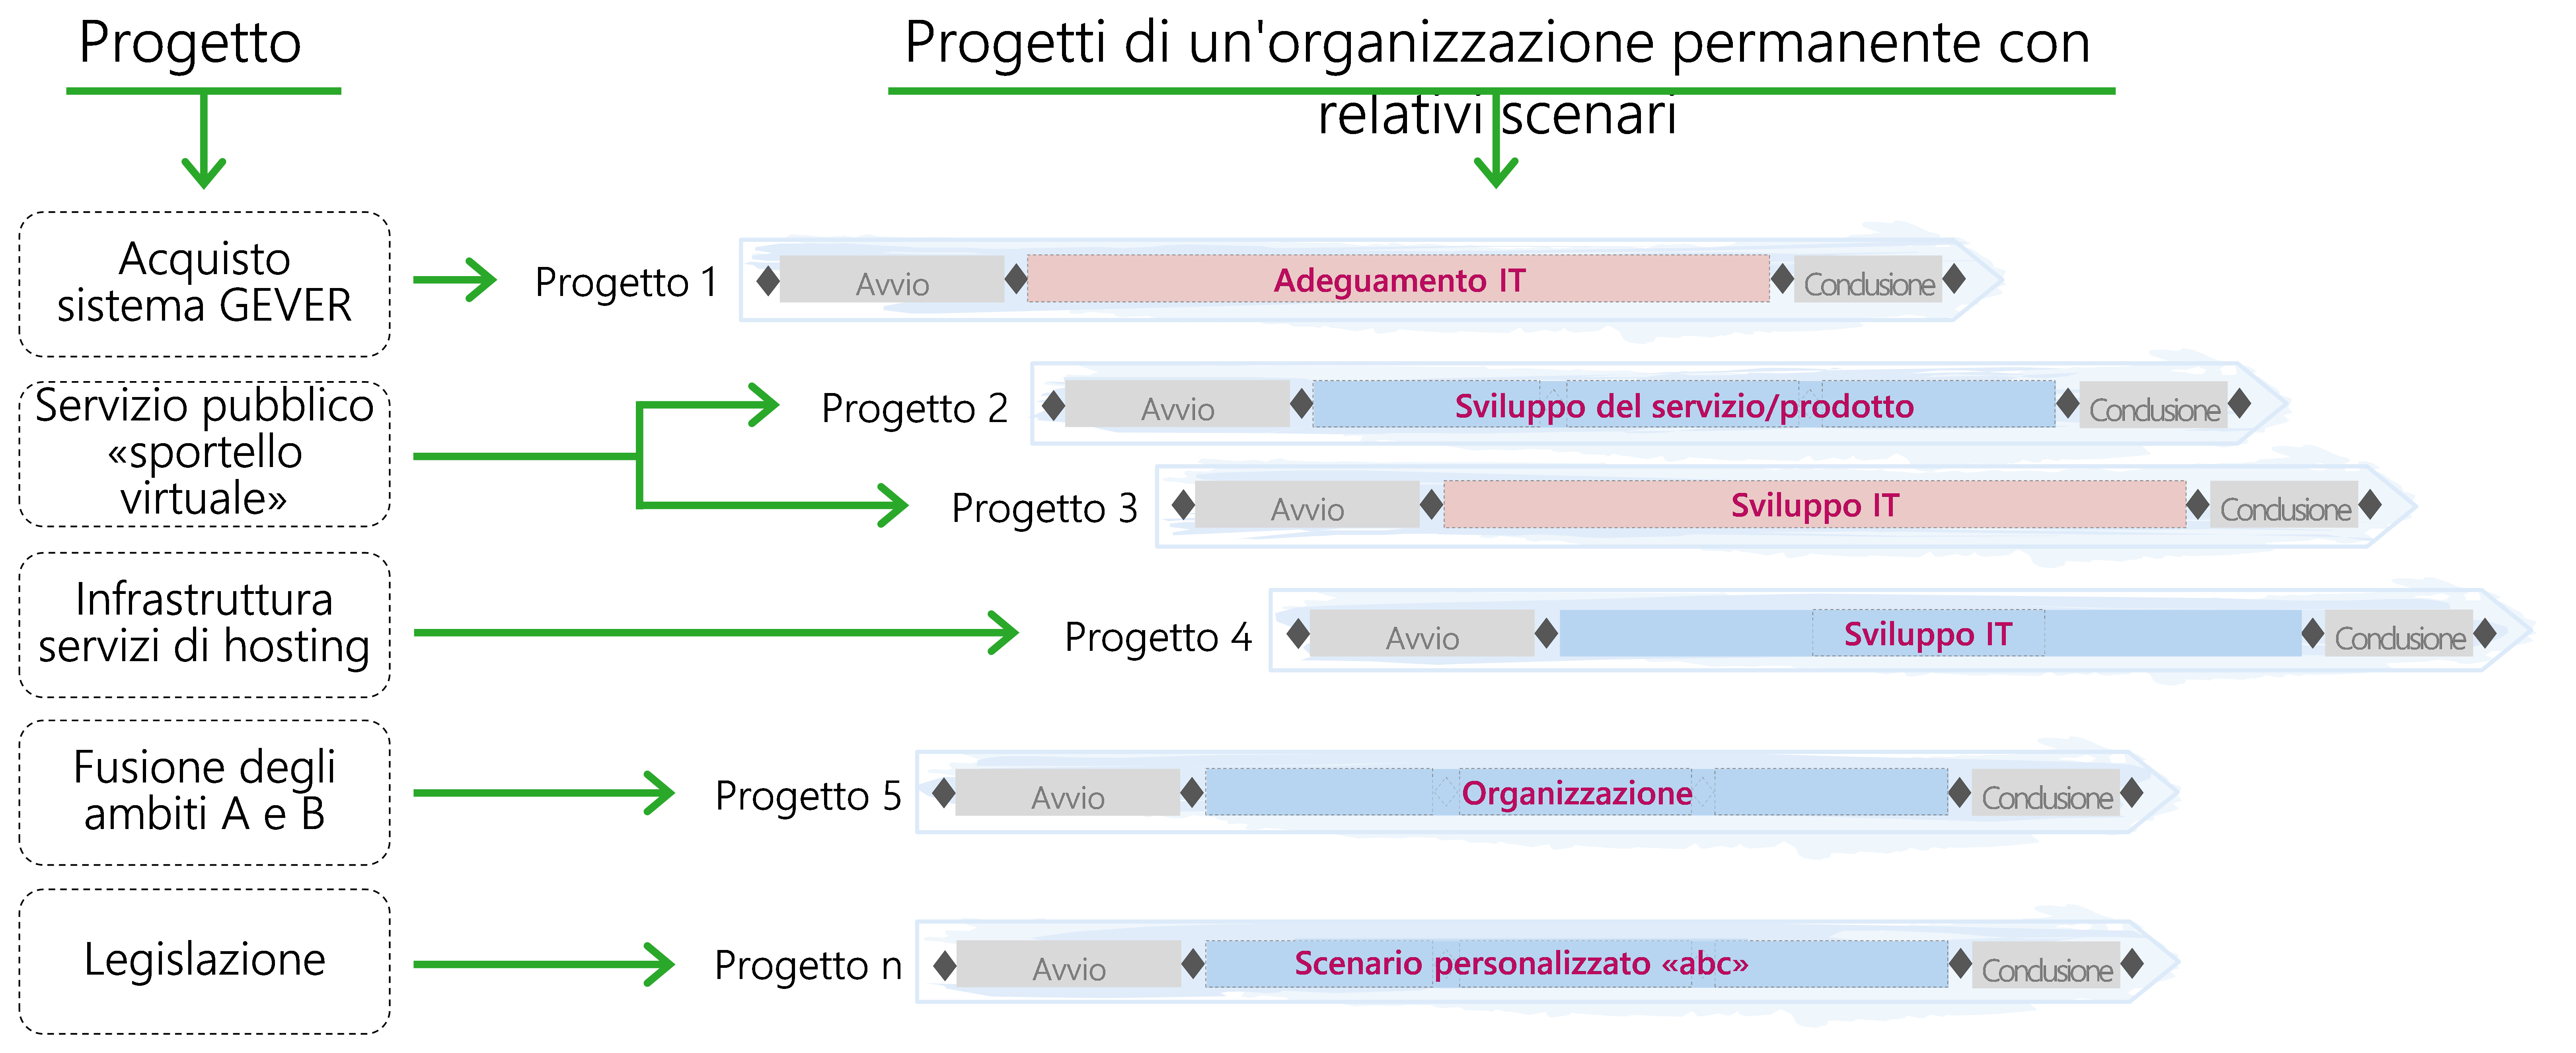 Figura 6: progetti di un'organizzazione permanente e relativi scenari